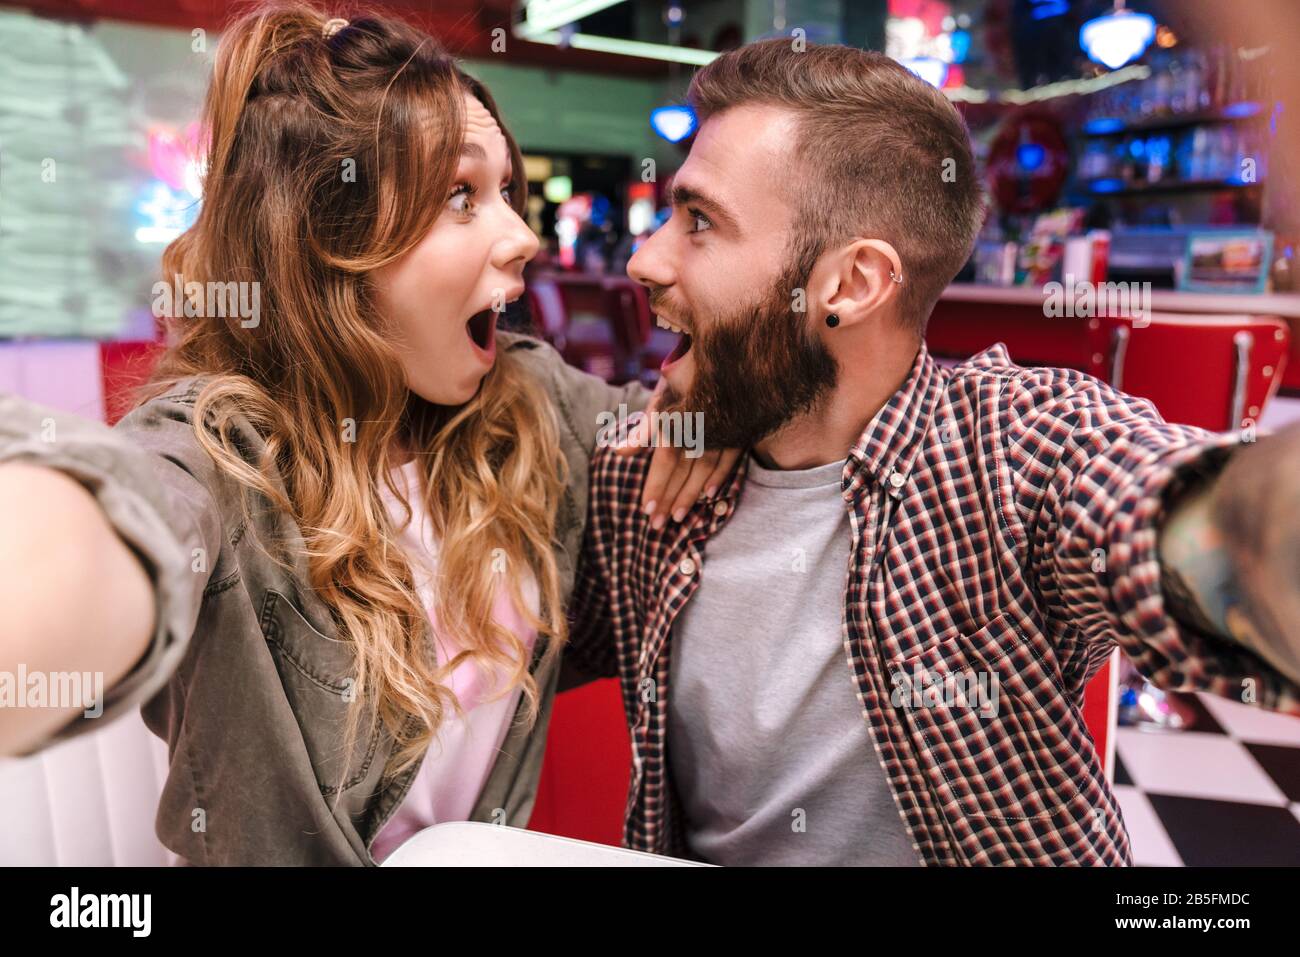 Image d'un joli couple surpris et enchanté de jeunes amoureux dans un café de cuisine de rue rétro lumineux prendre un selfie par appareil photo. Banque D'Images